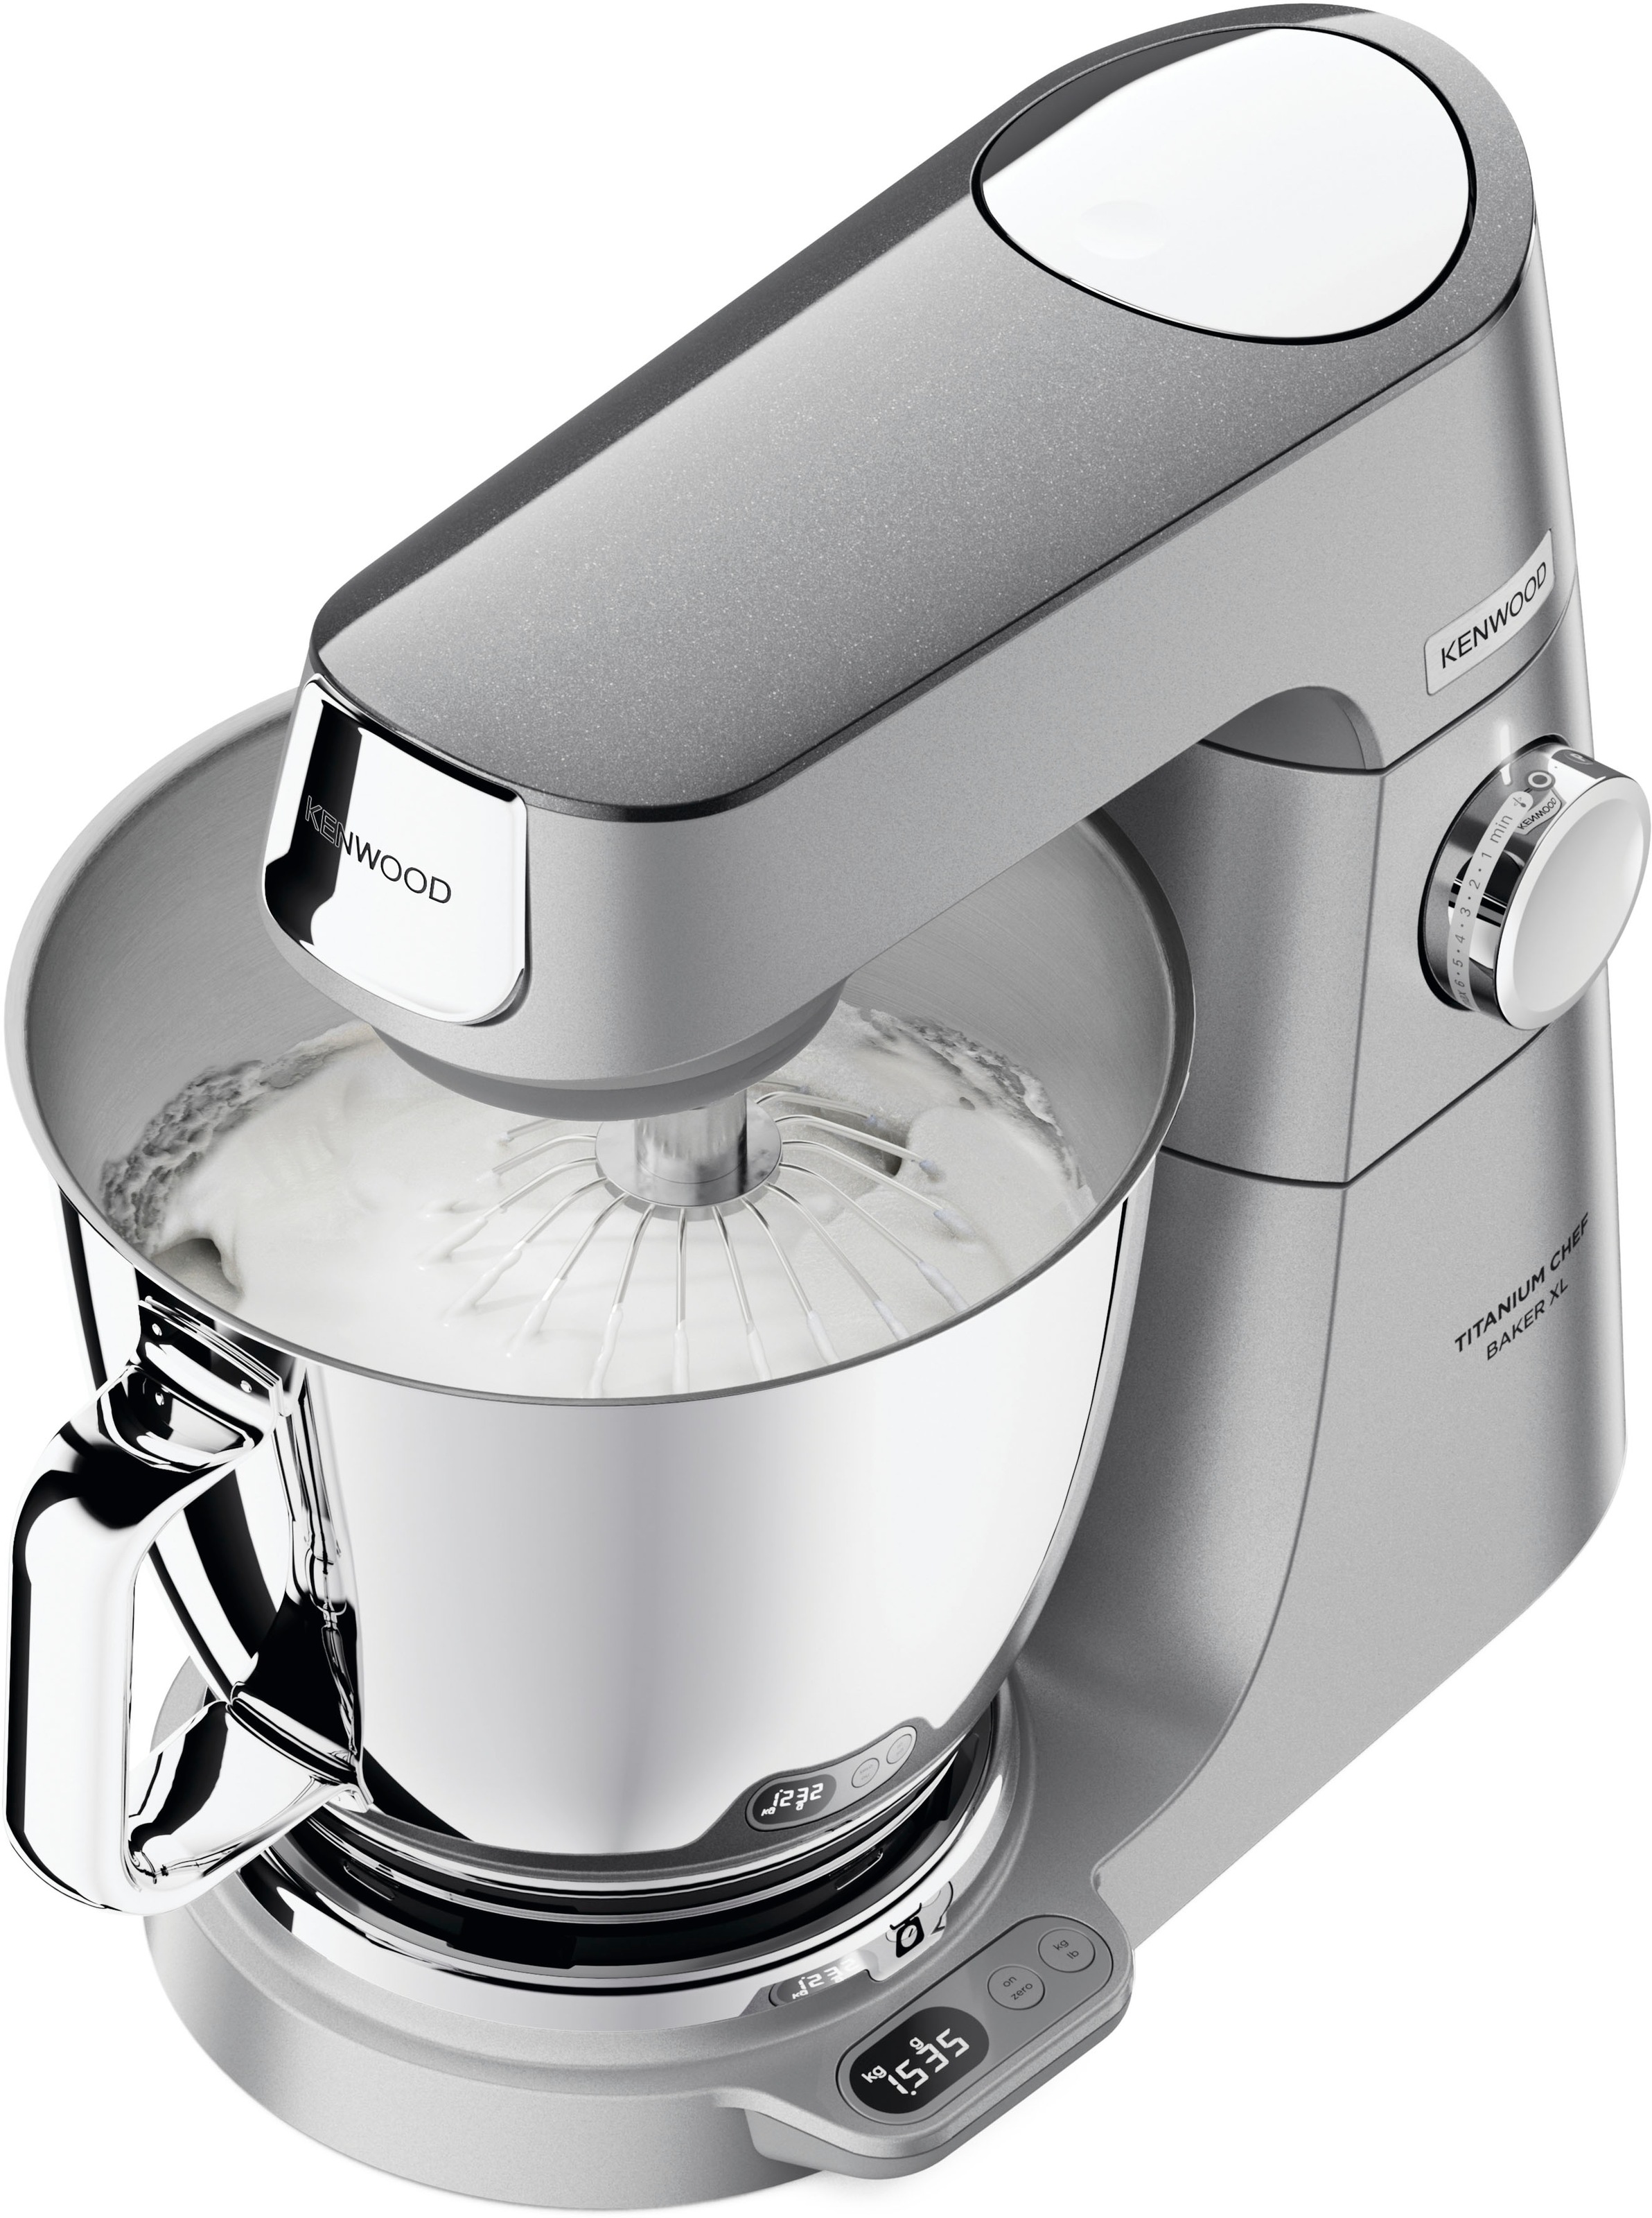 KENWOOD Küchenmaschine »Titanium Chef Baker XL KVL85.704SI«, inkl. umfangreiches Zubehör, mit integrierter EasyWeigh Waage